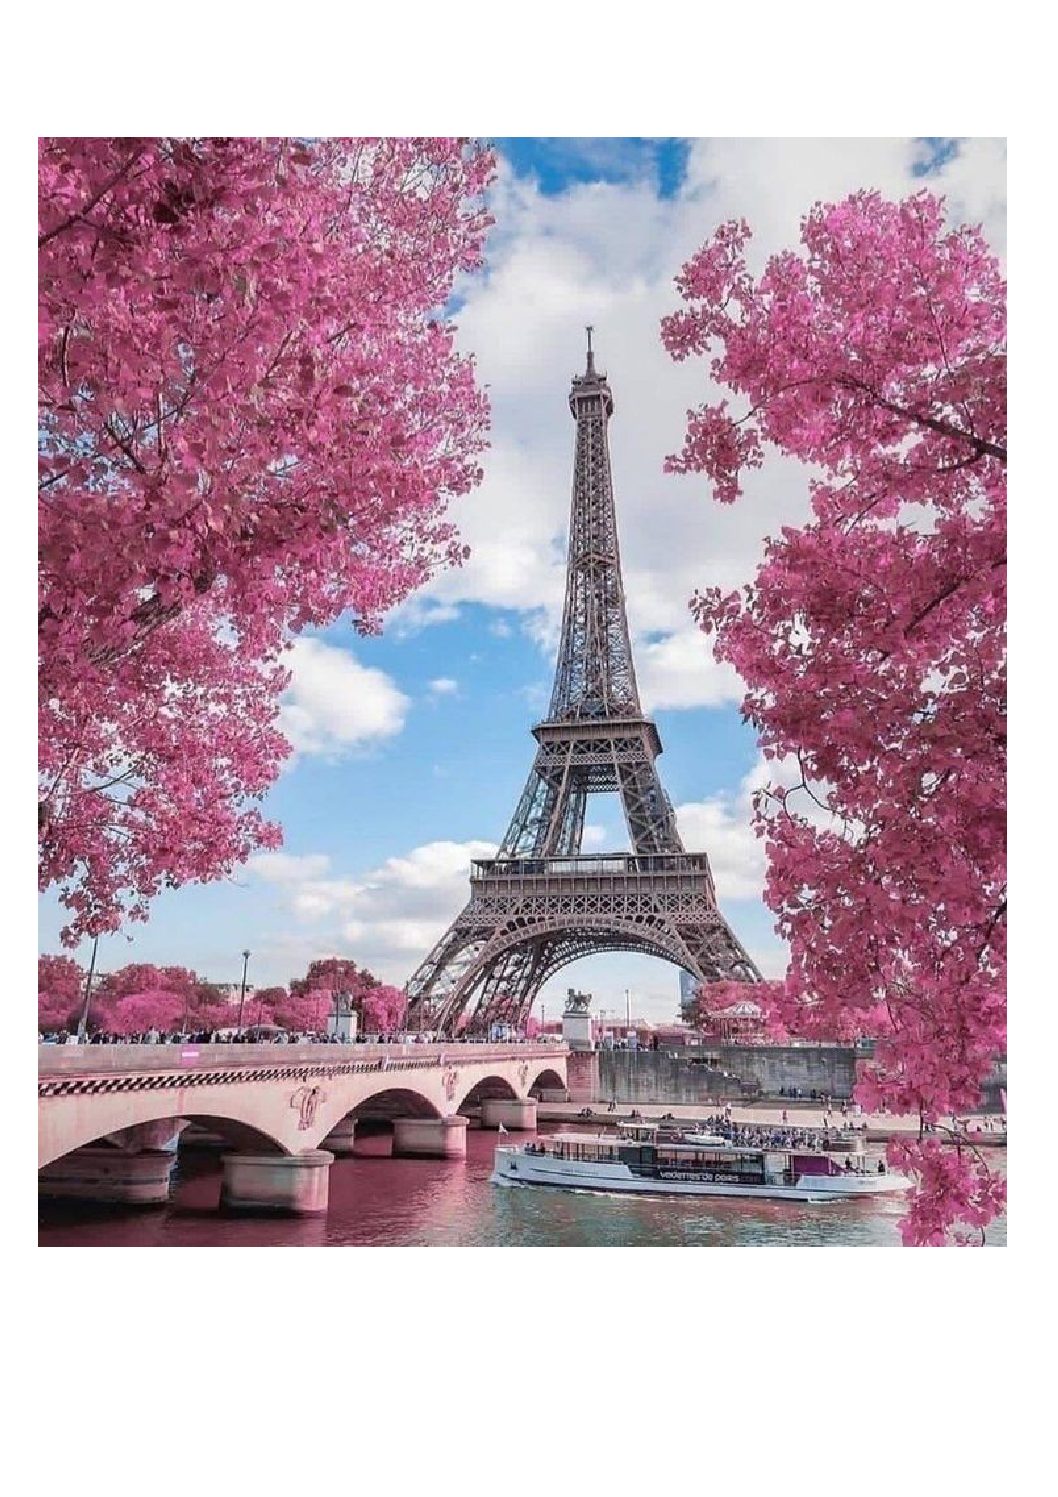 Le séjour à Paris des secondes: carnets de voyage